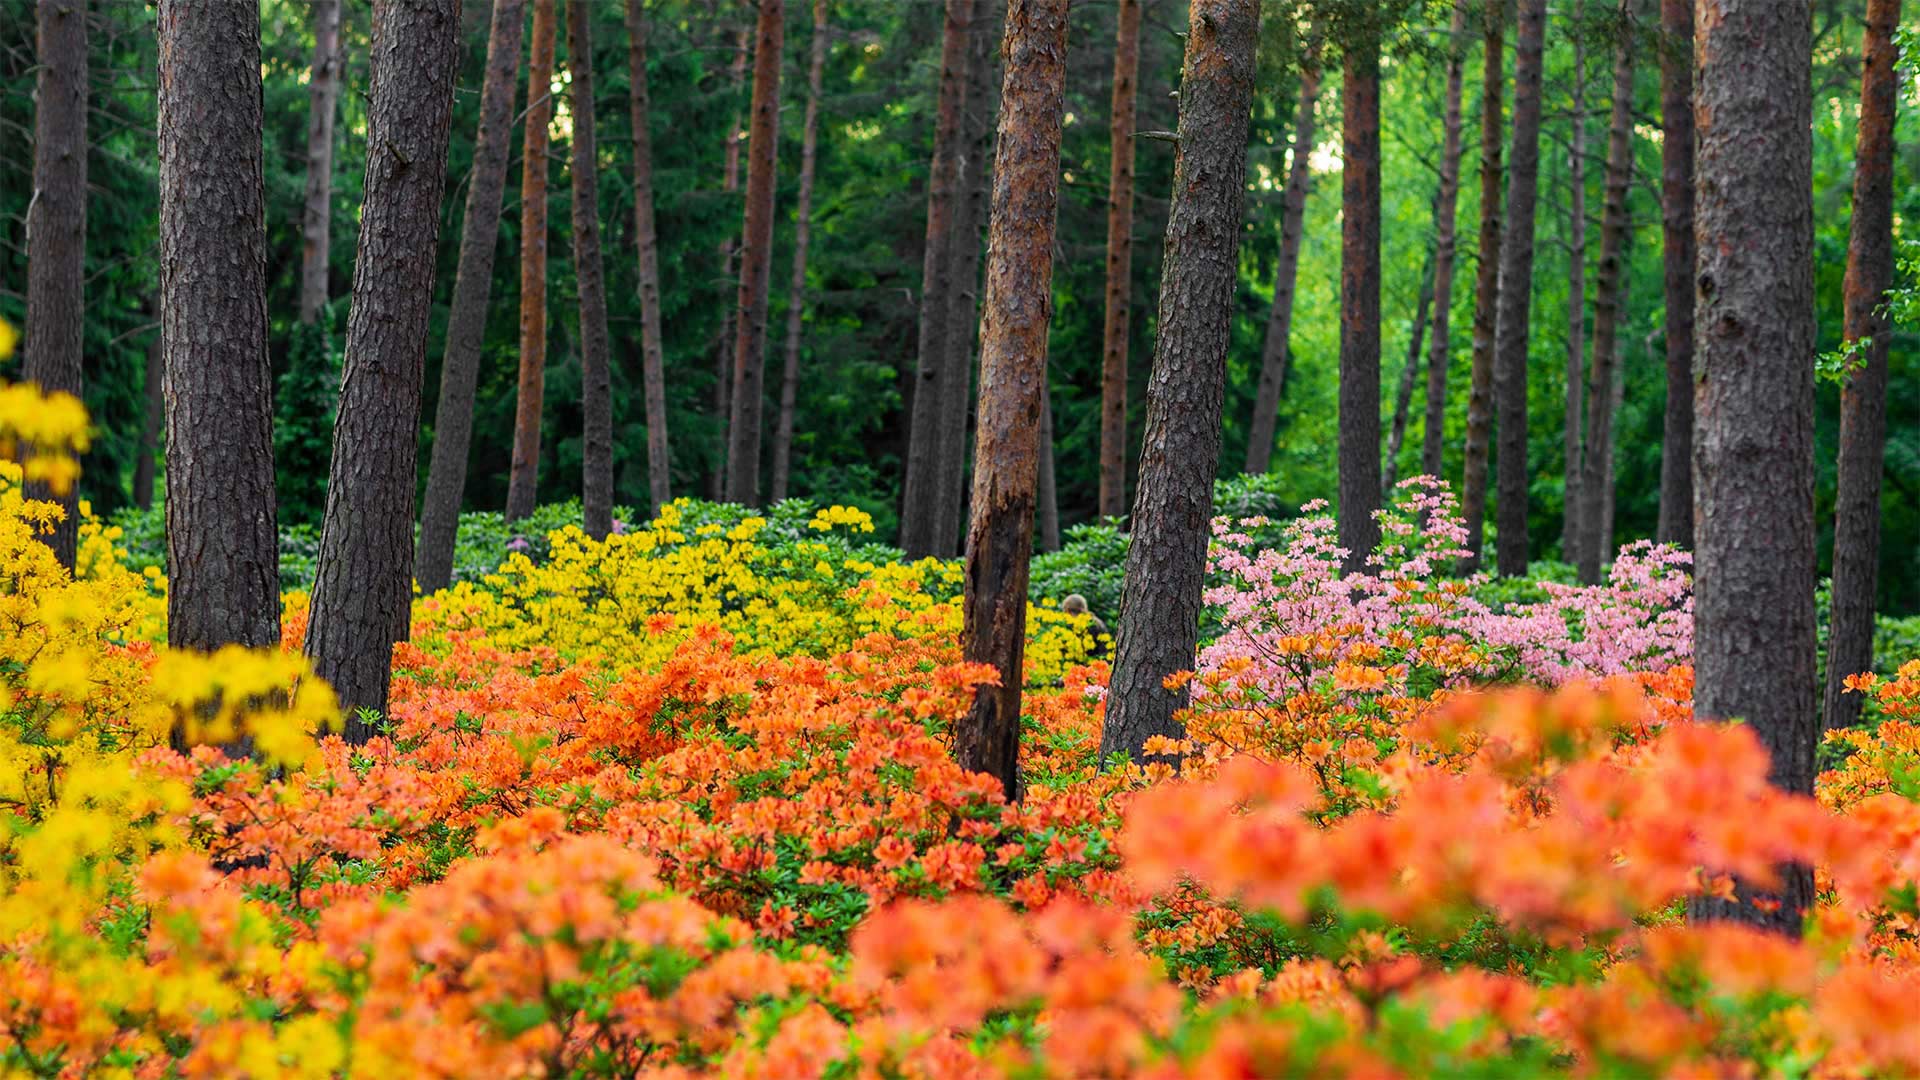 Haaga Rhododendron Park, Helsinki, Finland - Samuli Vainionpää/Getty Images)